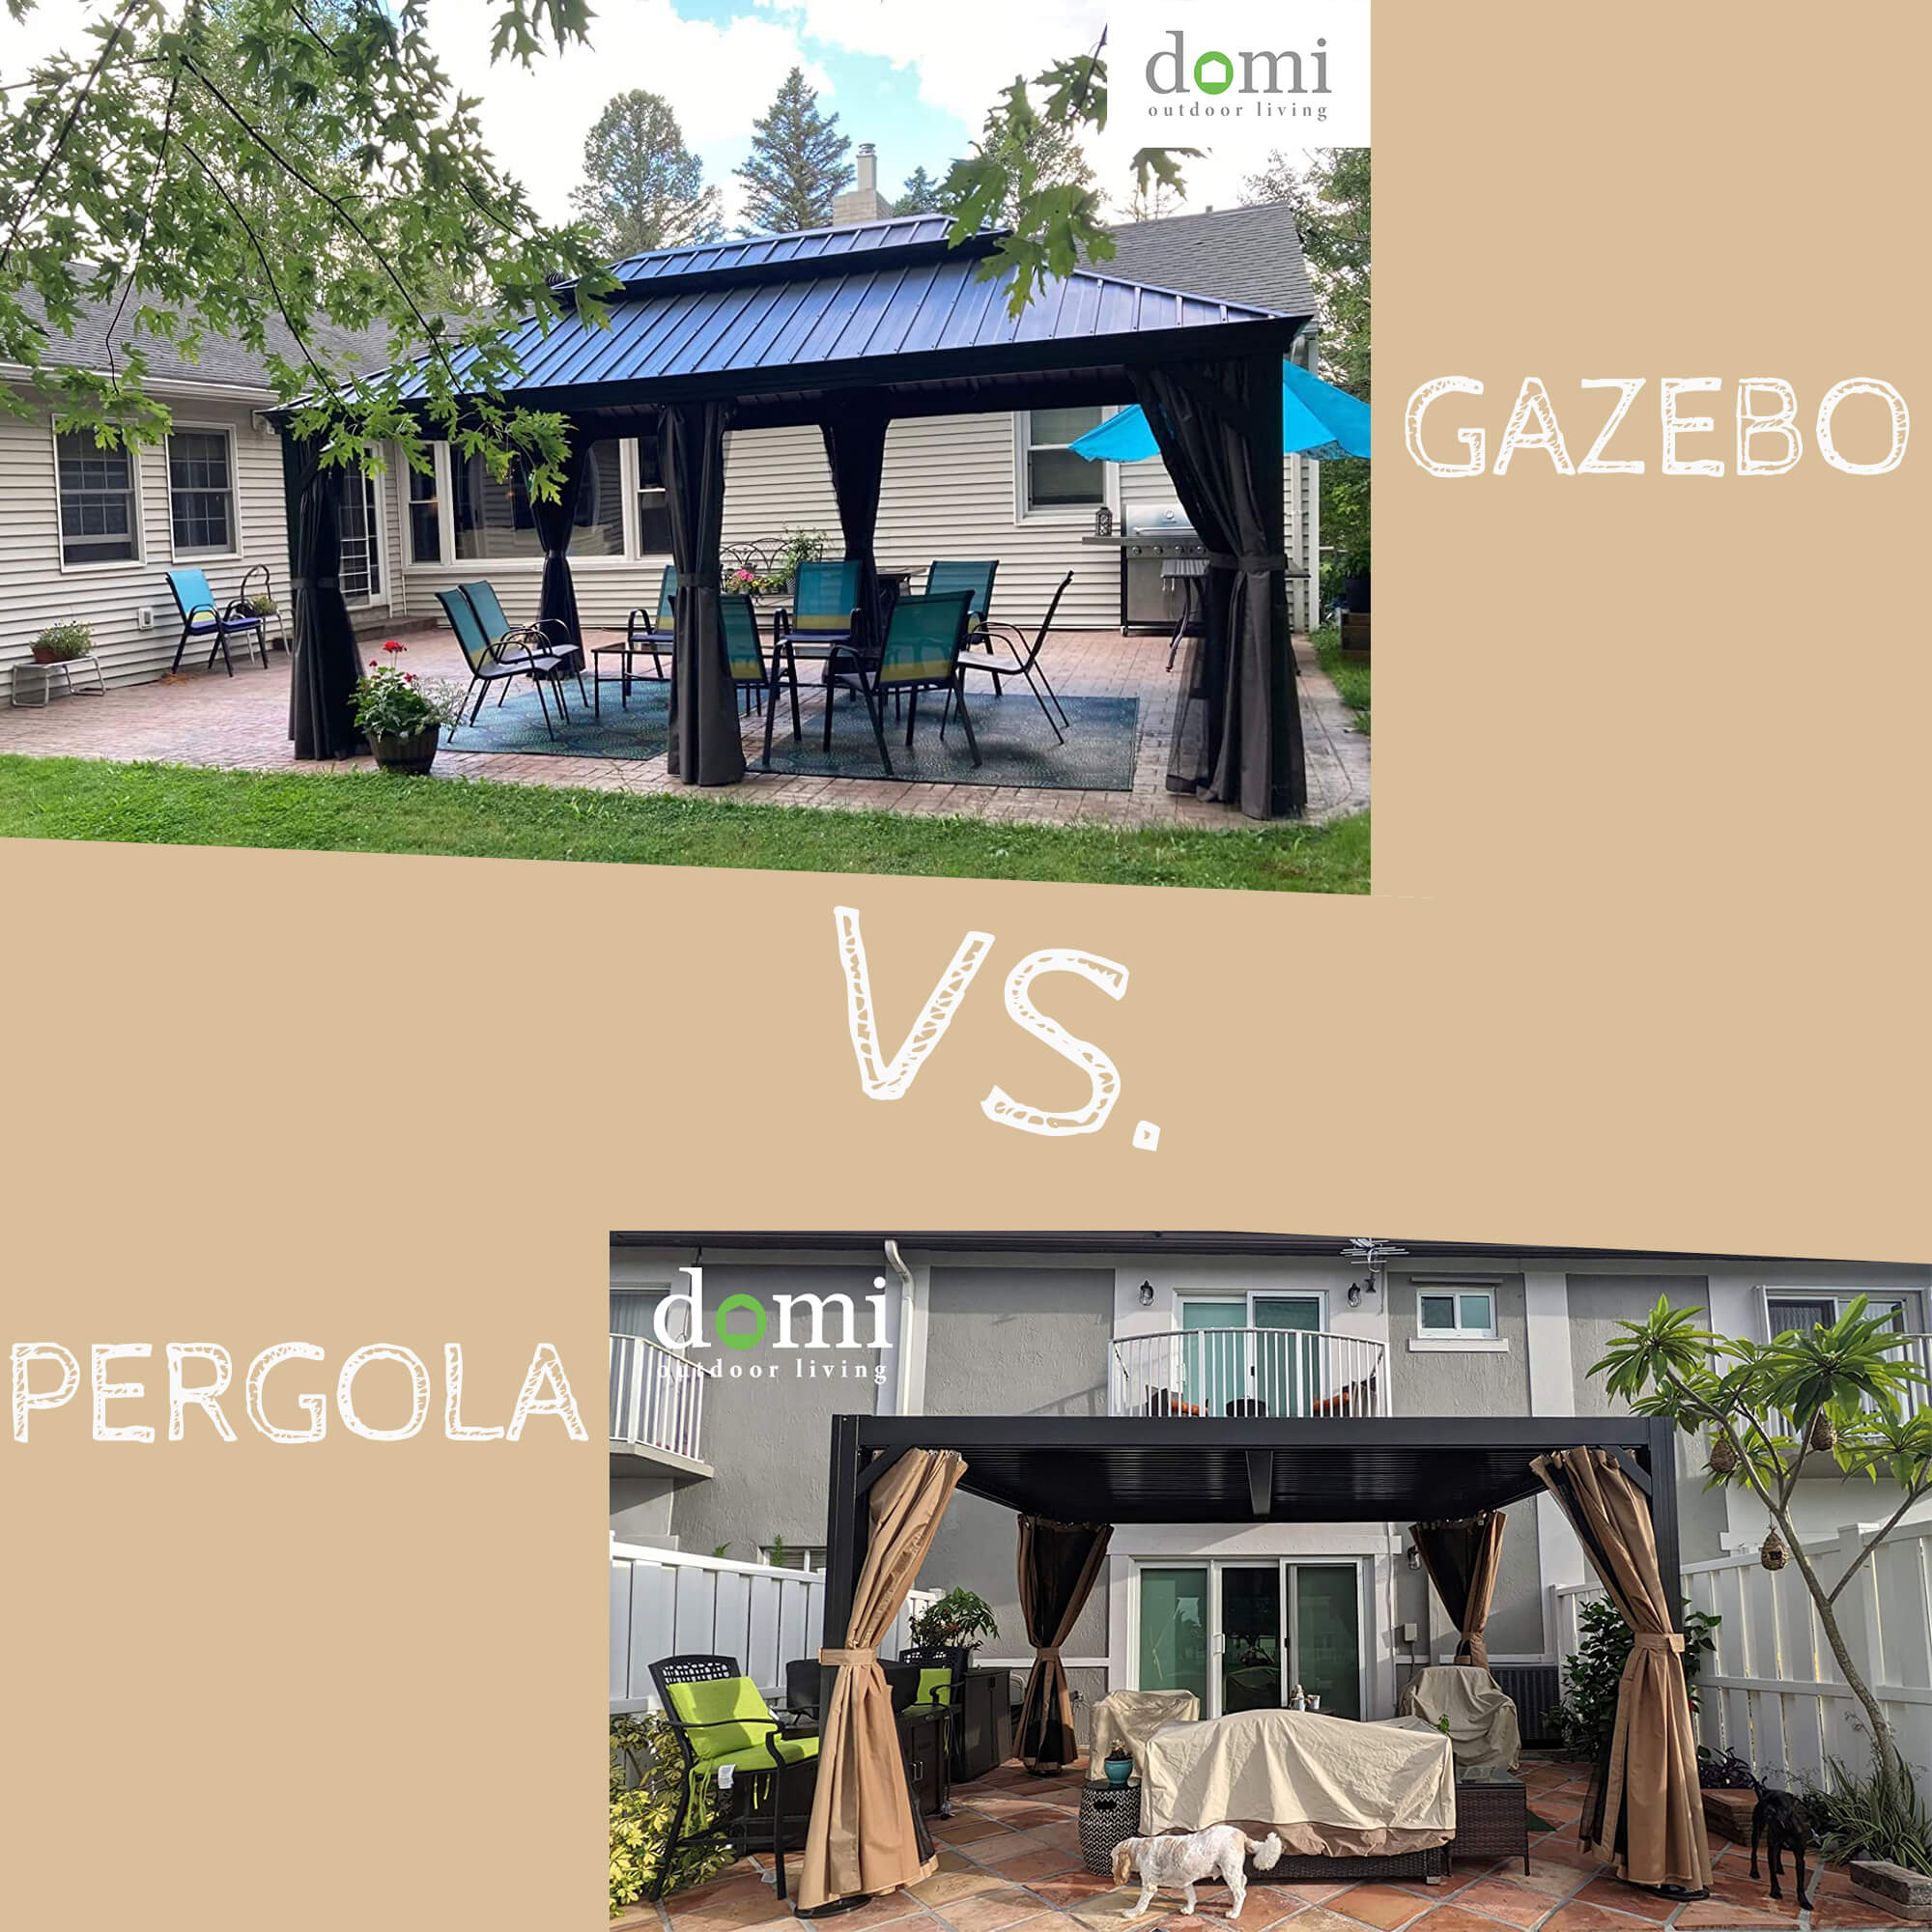 Domi Outdoor Living gazebo vs. pergola